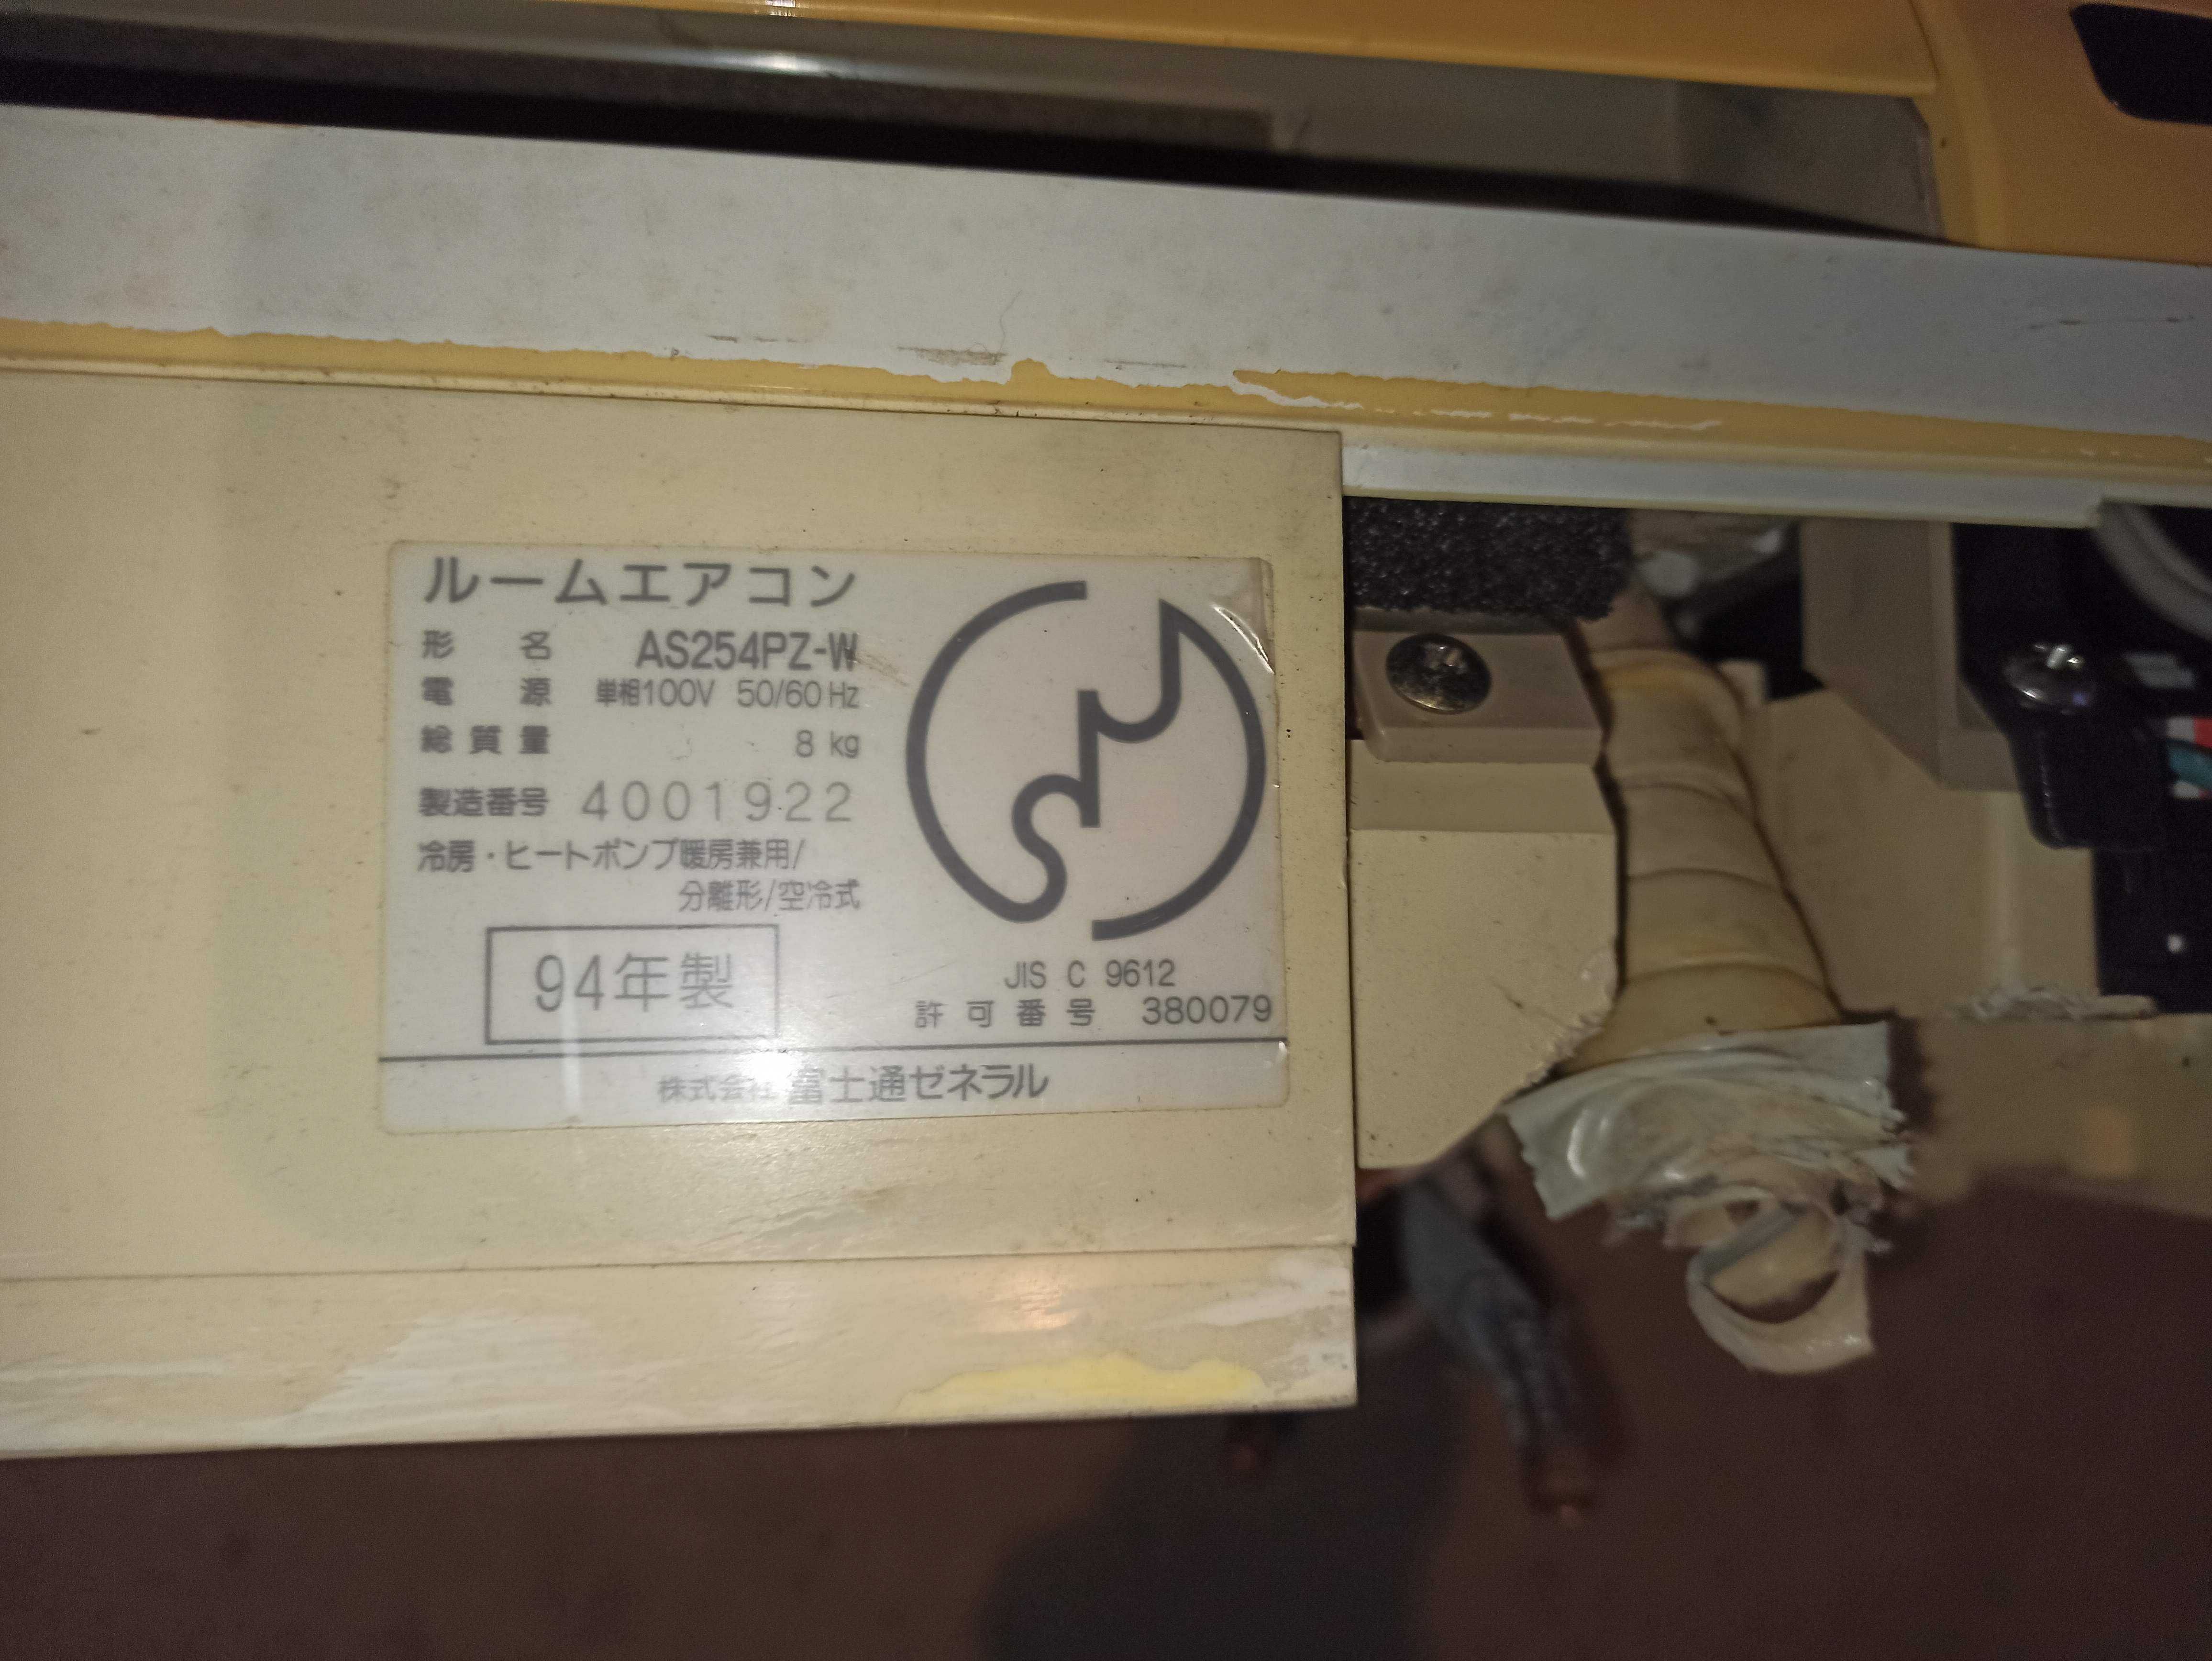 Вътрешно тяло на климатик - Fujitsu AS254PZ-W